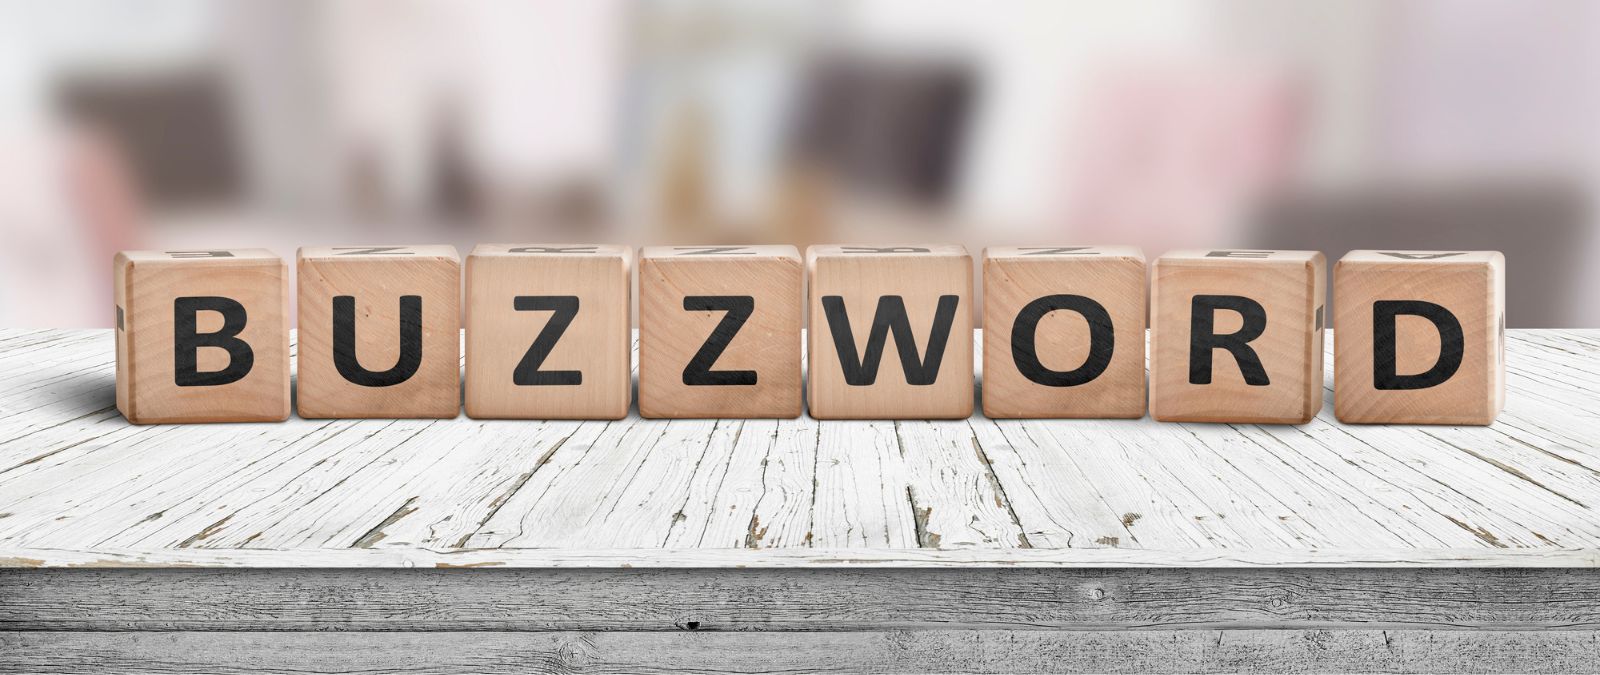 Management-Buzzwörter: Buzzword aus Holzklötzen auf einem Tisch.